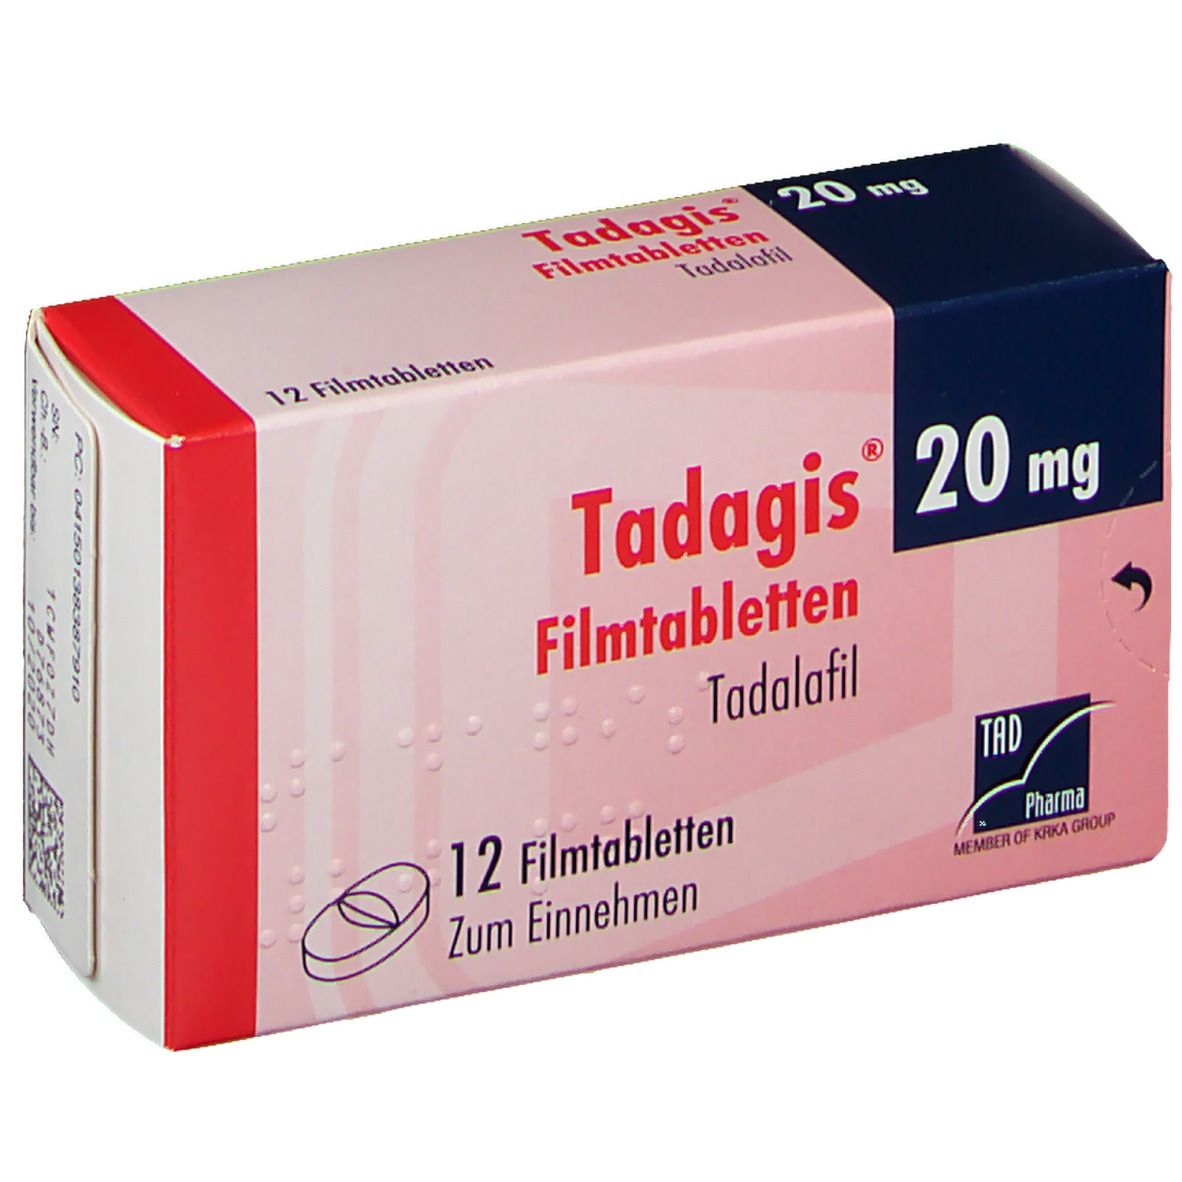 Tadagis® 20 mg